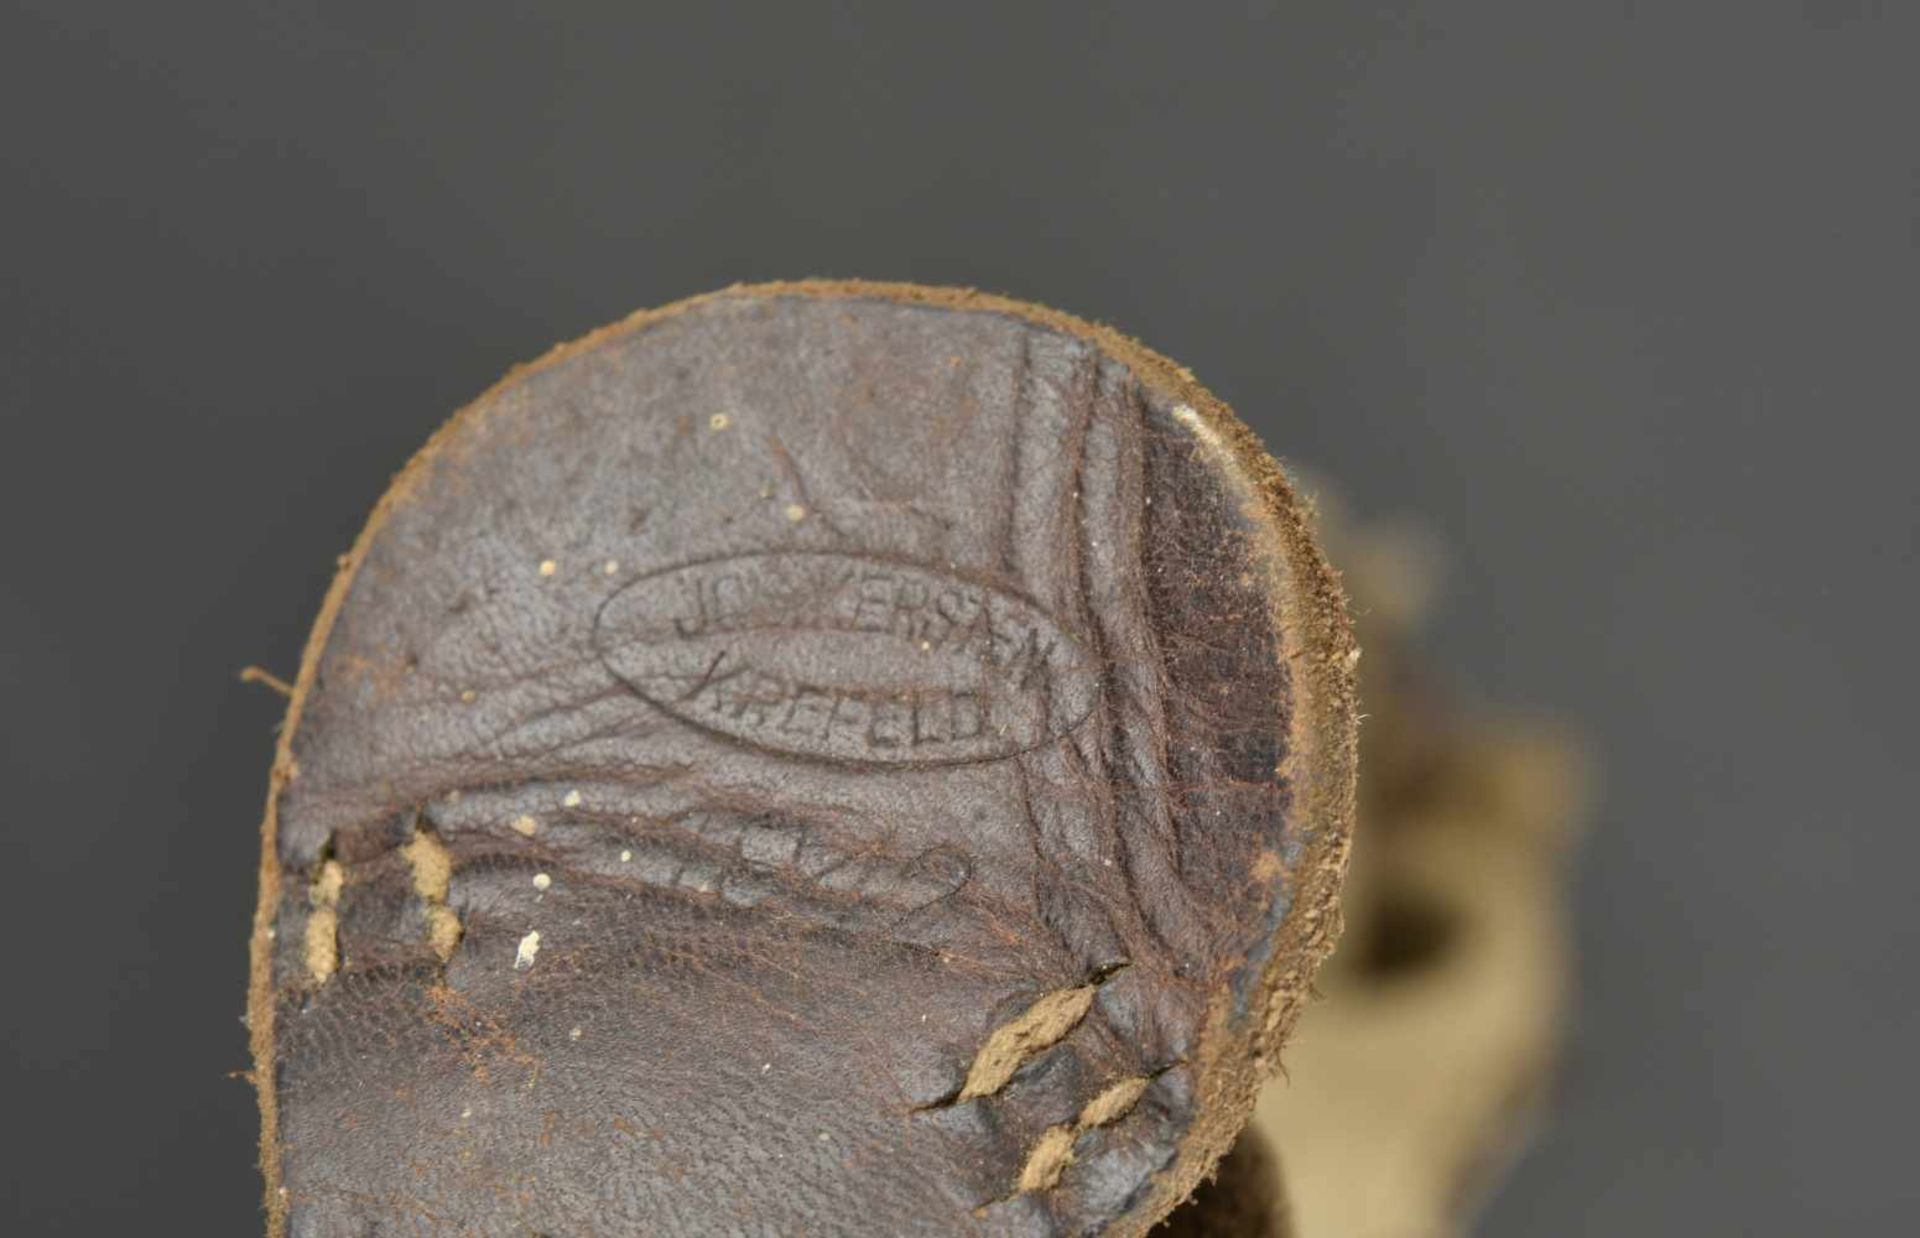 Brelage Afrikakorps En toile sable, complet, partie cuir datée 1942, toutes les pièces métalliques - Image 2 of 3